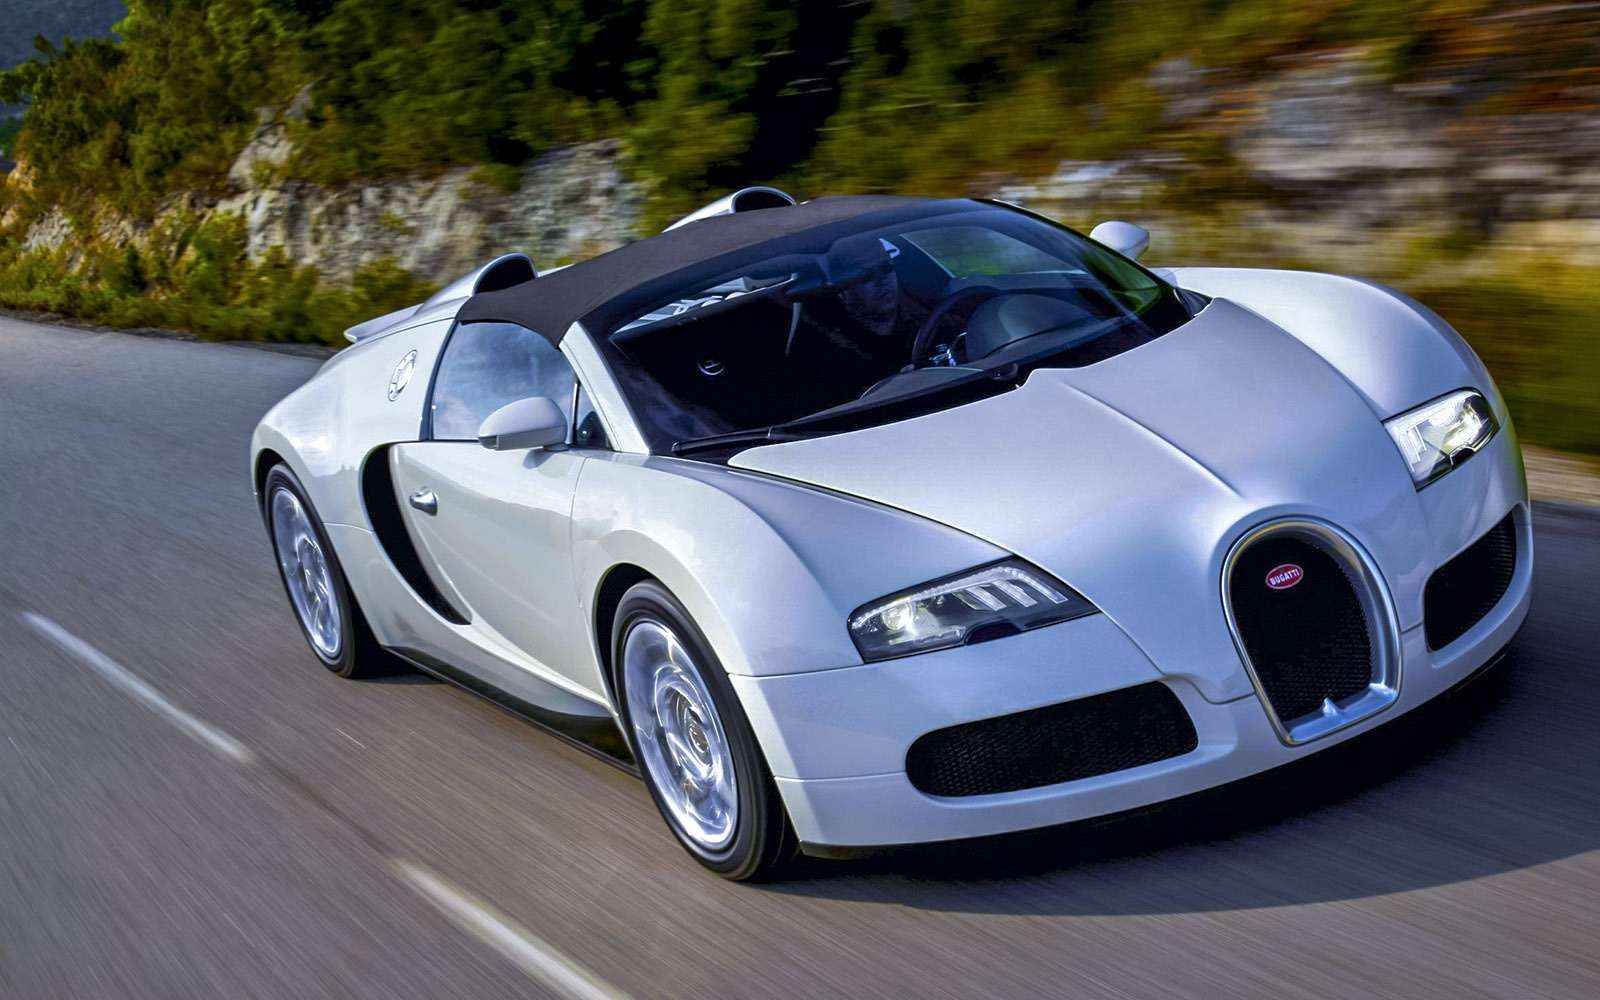 Bugatti Veyron – символ доведения роста мощности и скорости до абсолюта (или до абсурда?). Мотор W16 развивает 1200 л.с. и разгоняет автомобиль до 100 км/ч за две с половиной секунды. Максималка – 415 км/ч. В известной мере этот автомобиль – больное дитя современного автопрома. ­
Но без таких монстров мир стал бы скучнее.